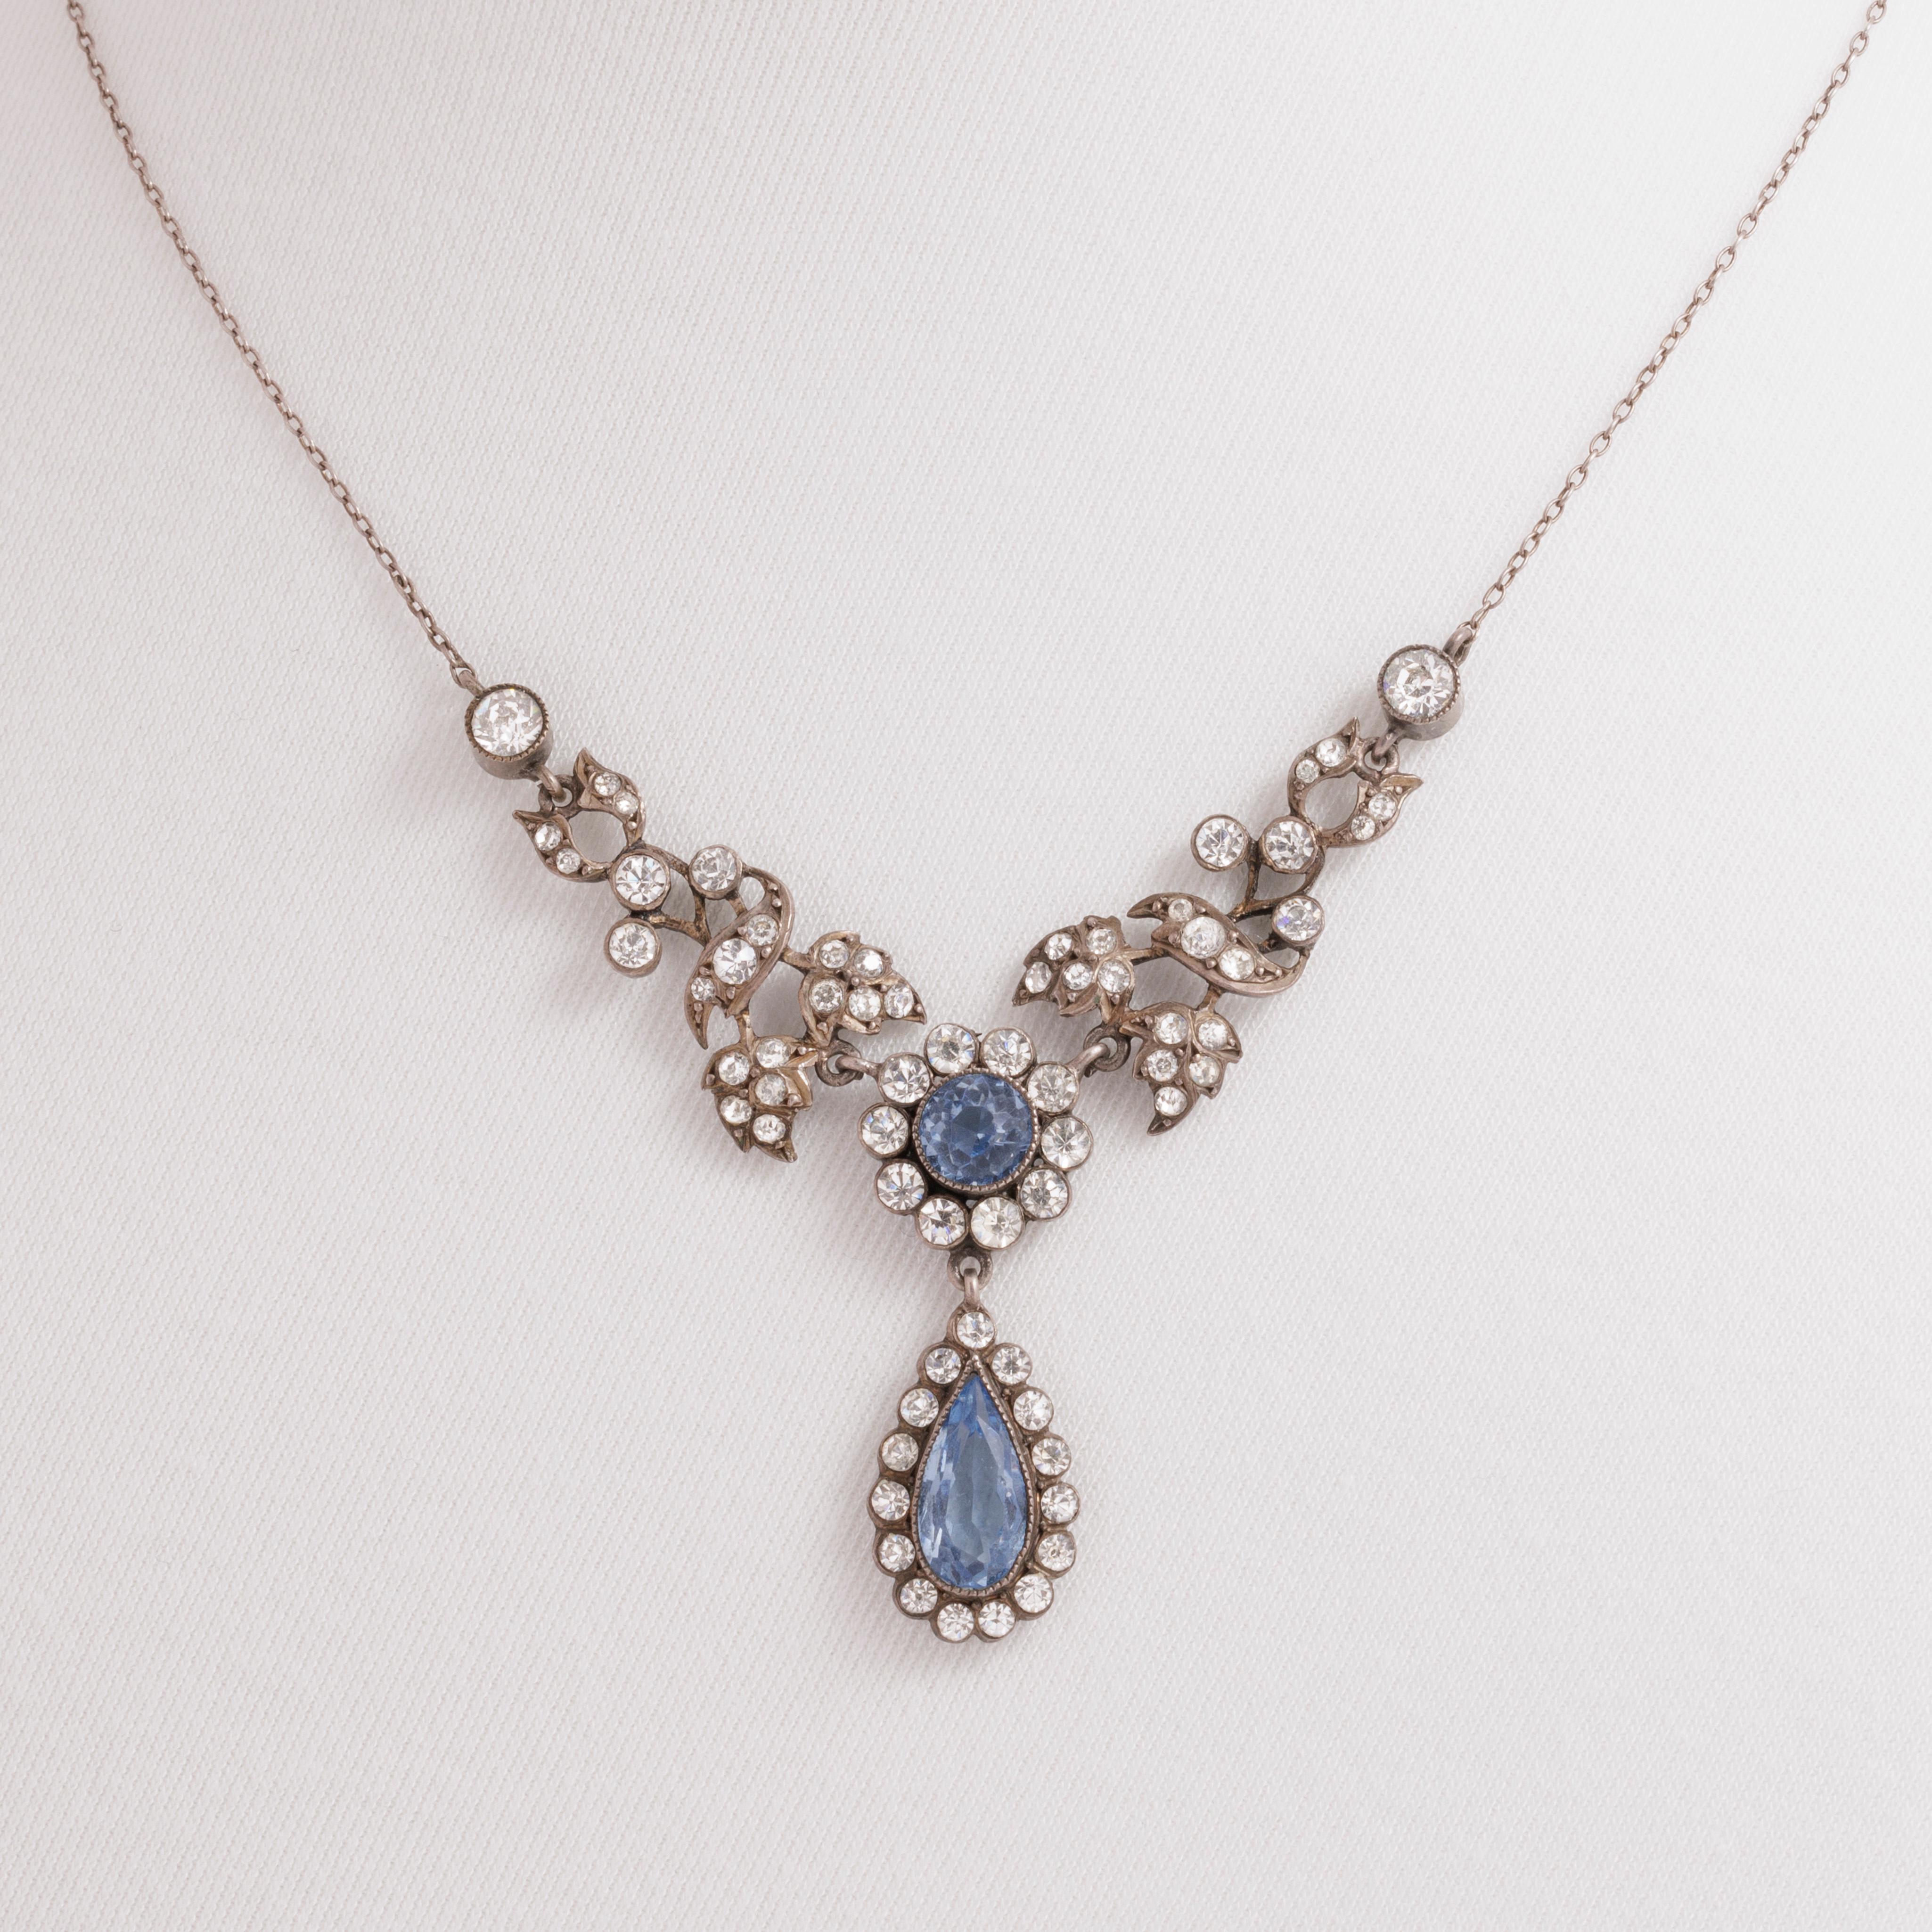 Antique Silver and Blue and Clear Paste Festoon Necklace
c.1920s

L 41.2 cm
H 6.185 cm
W 5.741 cm
11.5 grams